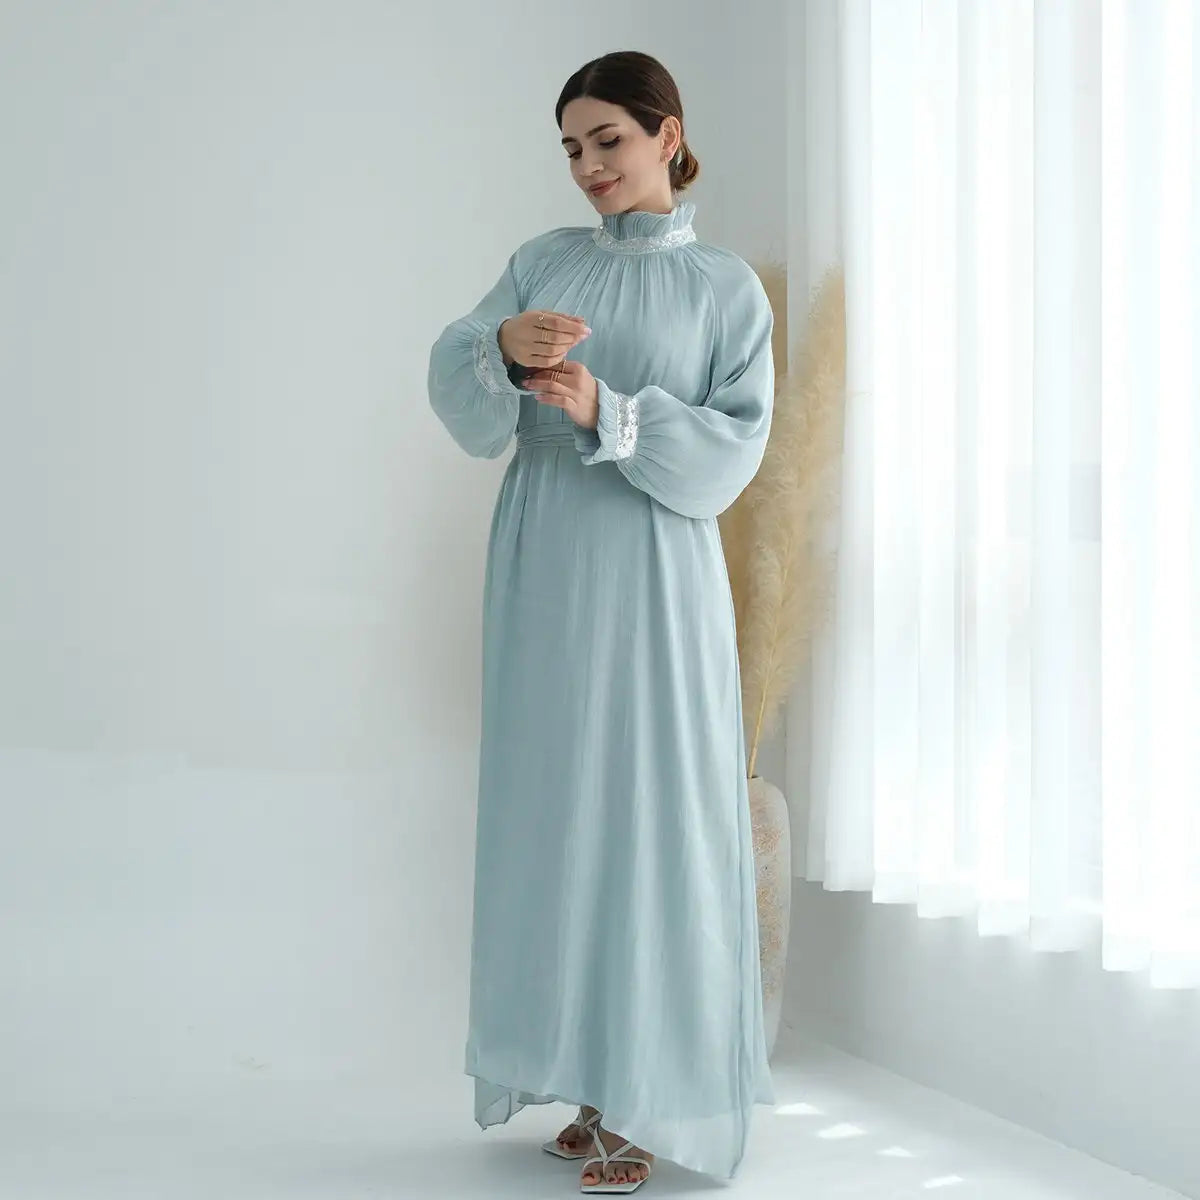 Muslim Women Shiny Bright Abaya Dress